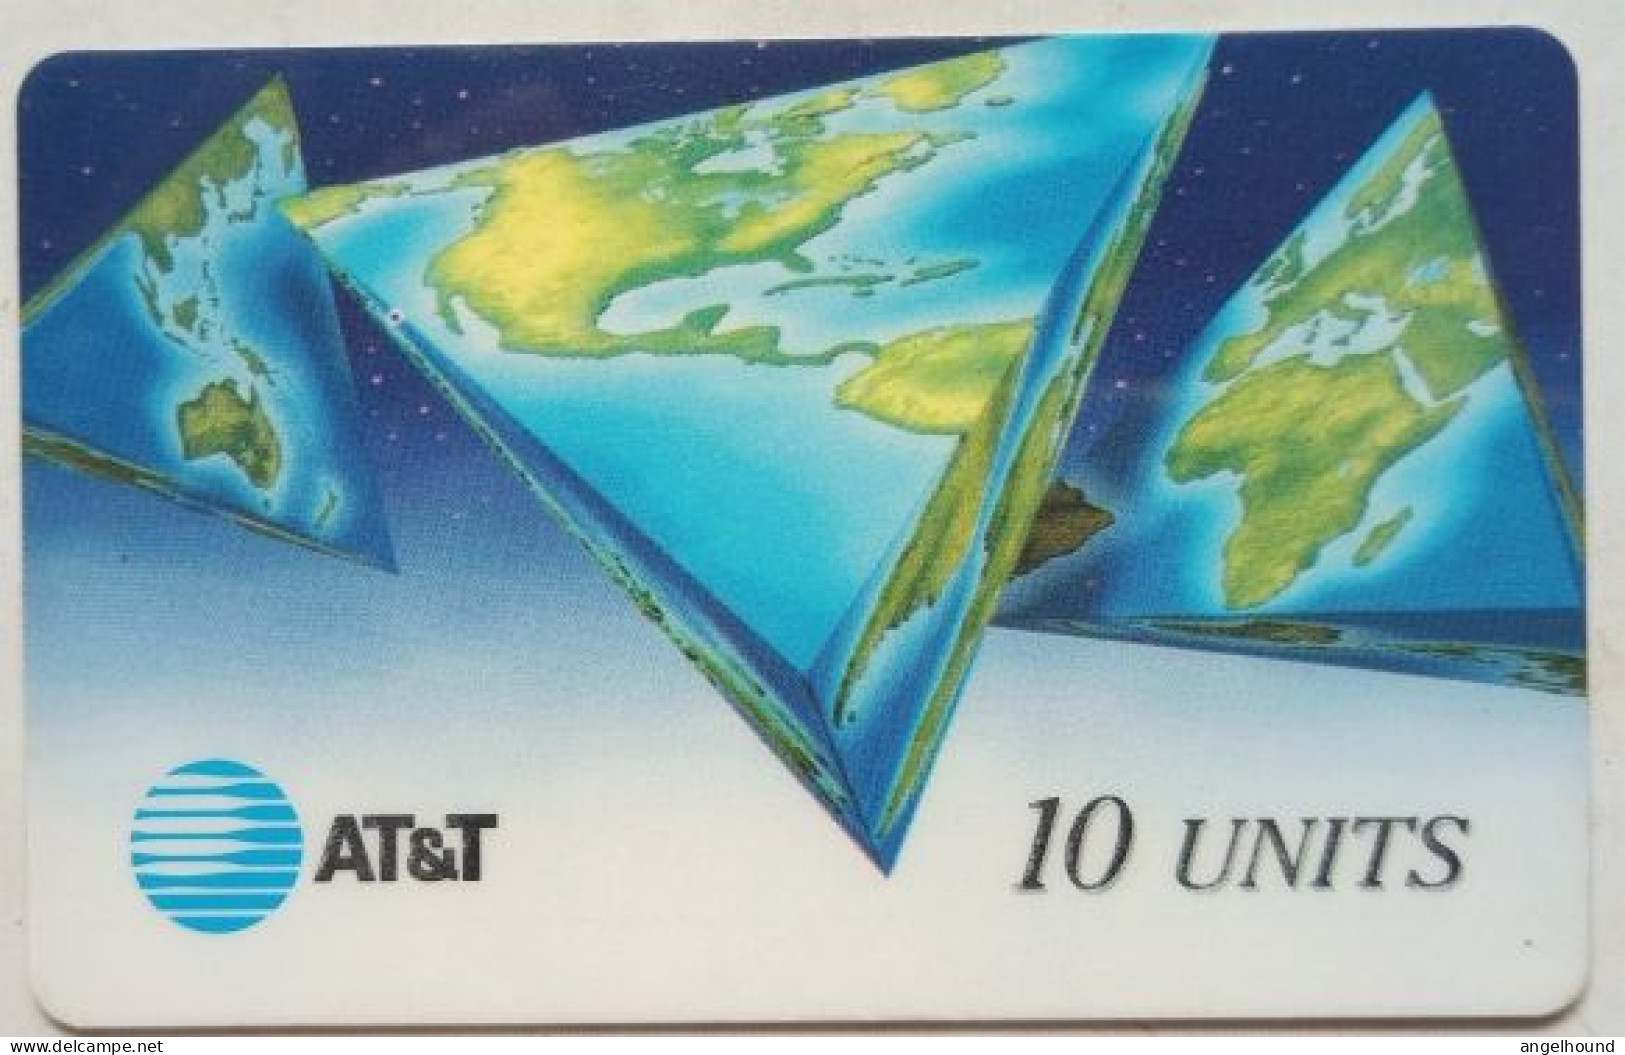 USA AT&T  10 Units " MAP " - AT&T